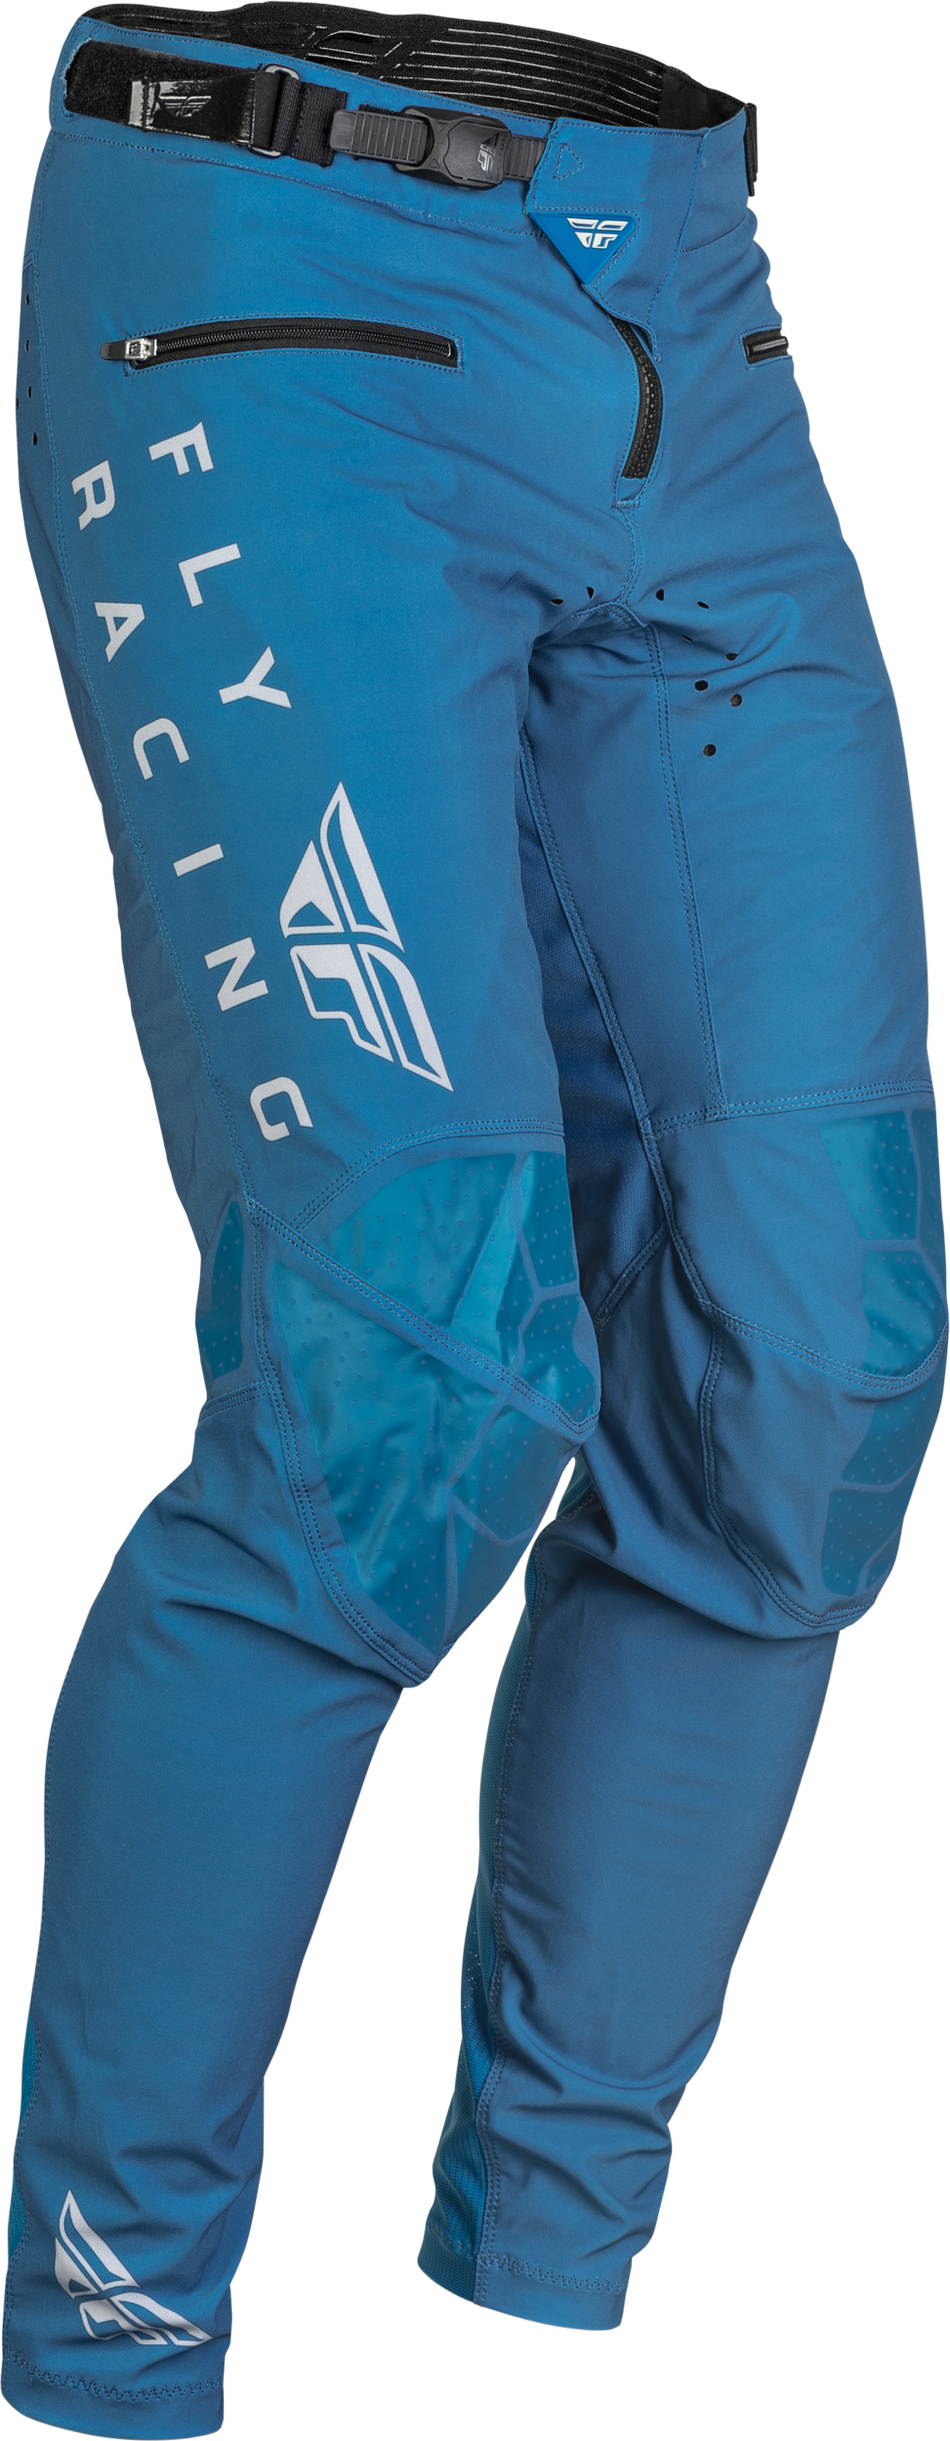 FLY RACING Radium Bicycle Pants Slate Blue/Grey Sz 38 376-04438